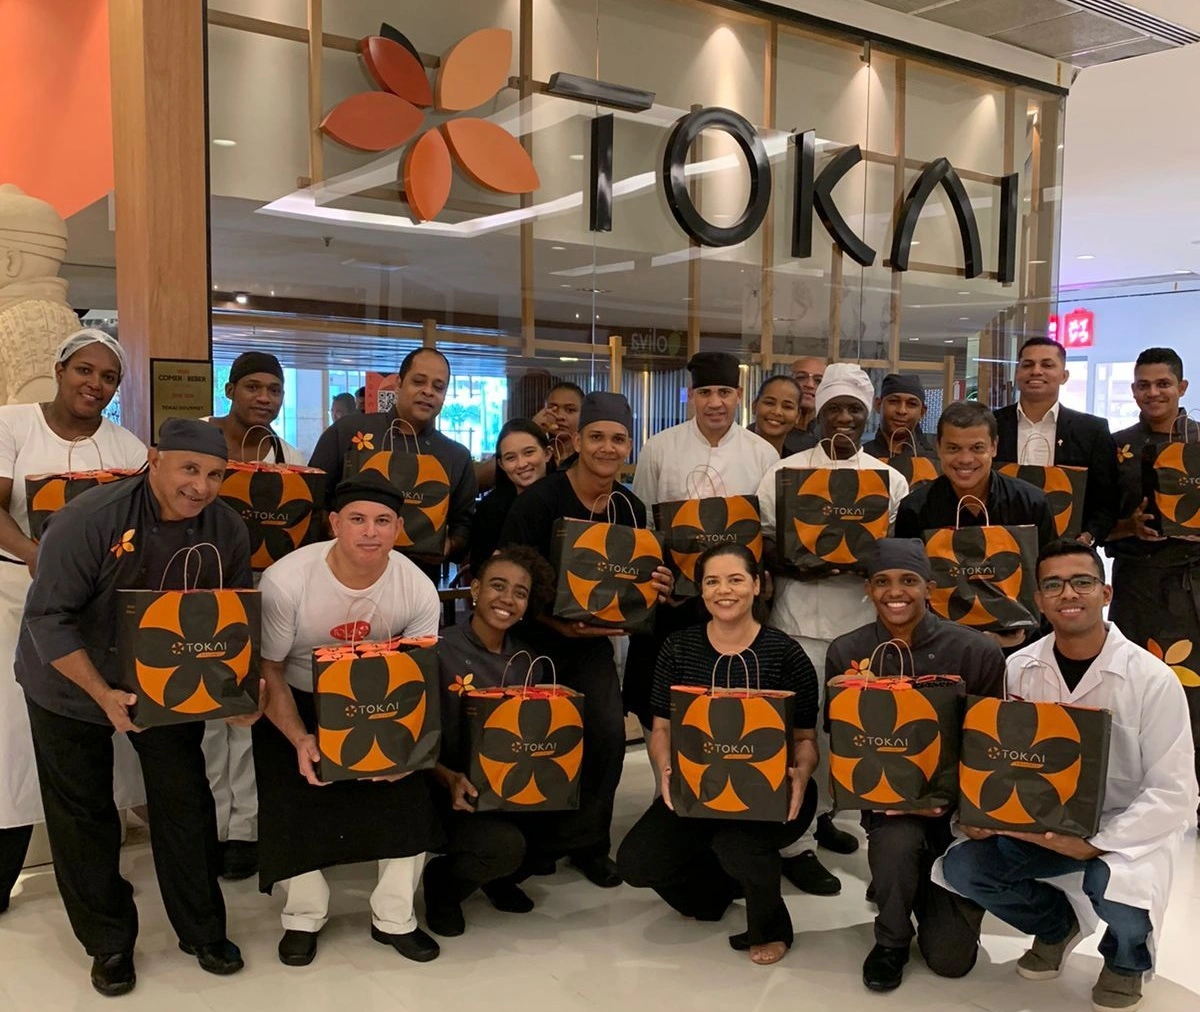 Grupo Tokai antecipa o Dia do Abraço, com doação de 300 refeições para colaboradores do Hospital Martagão Gesteira